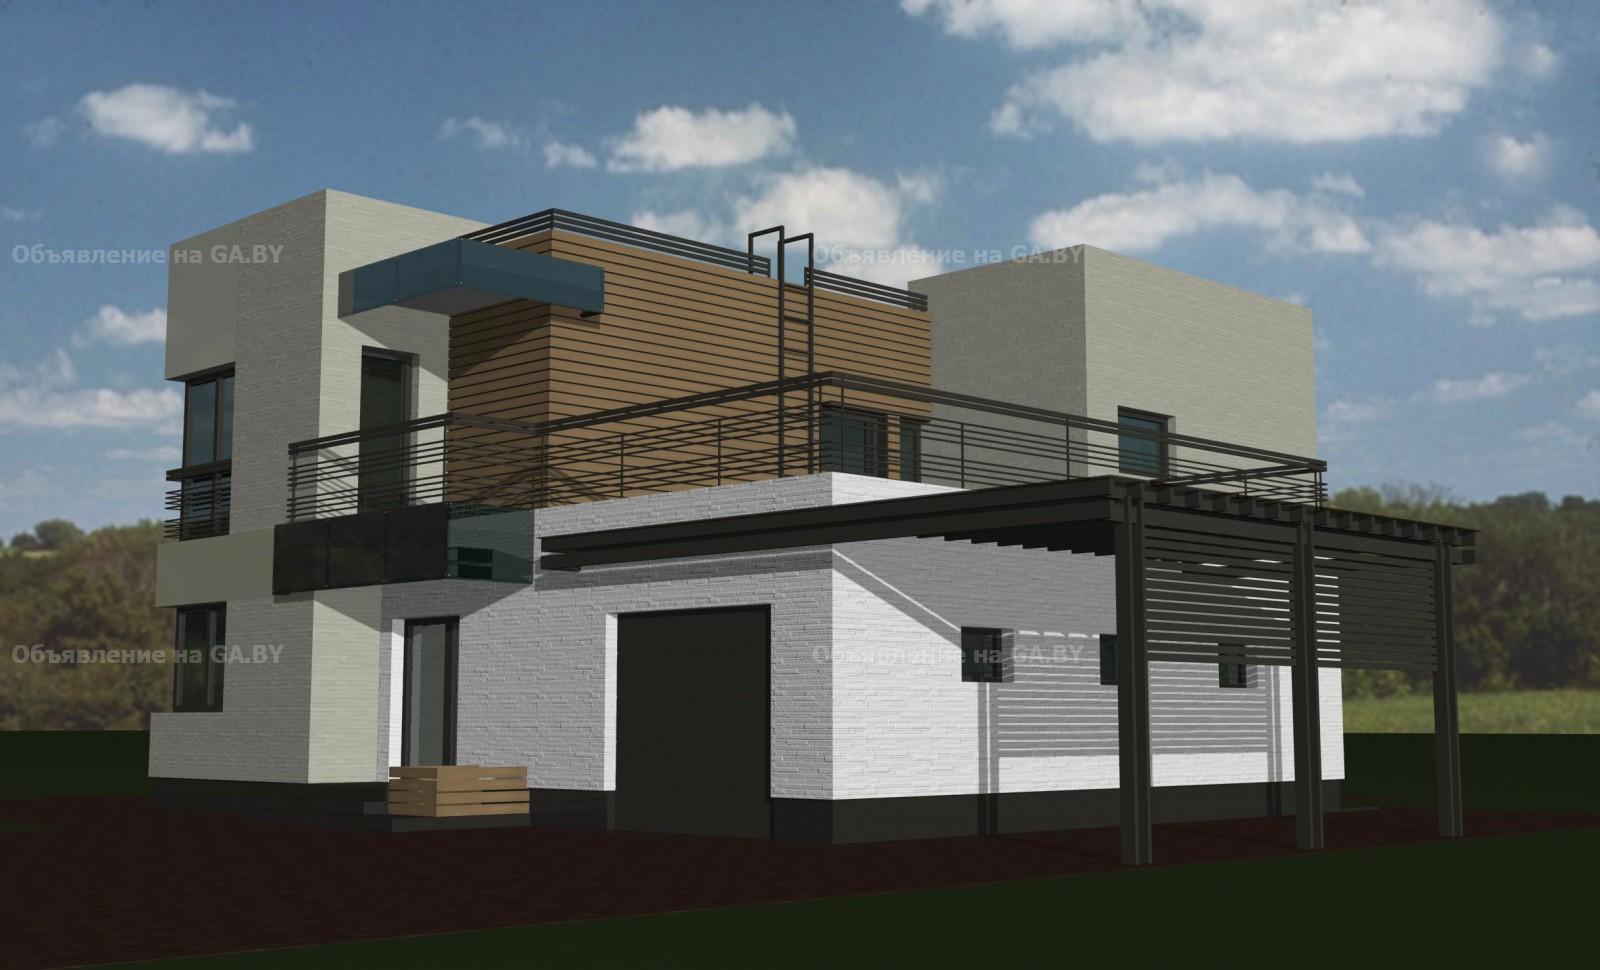 Выполню 3D дизайн фасадов домов. Проектирование домов и коттеджей. - GA.BY